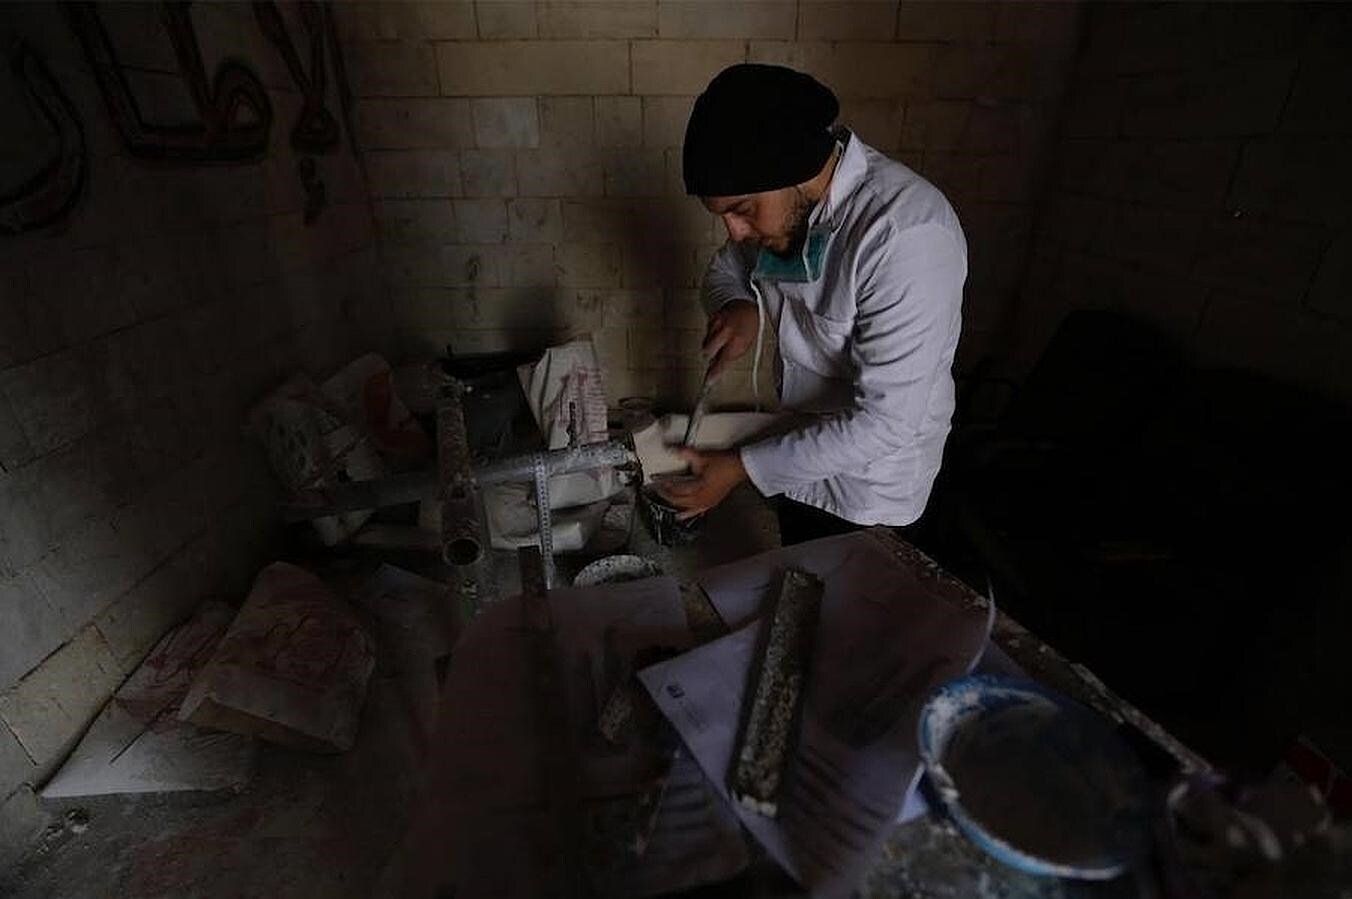 Khamis, de 24 años, termina una pierna artificial en su furgoneta-clínica